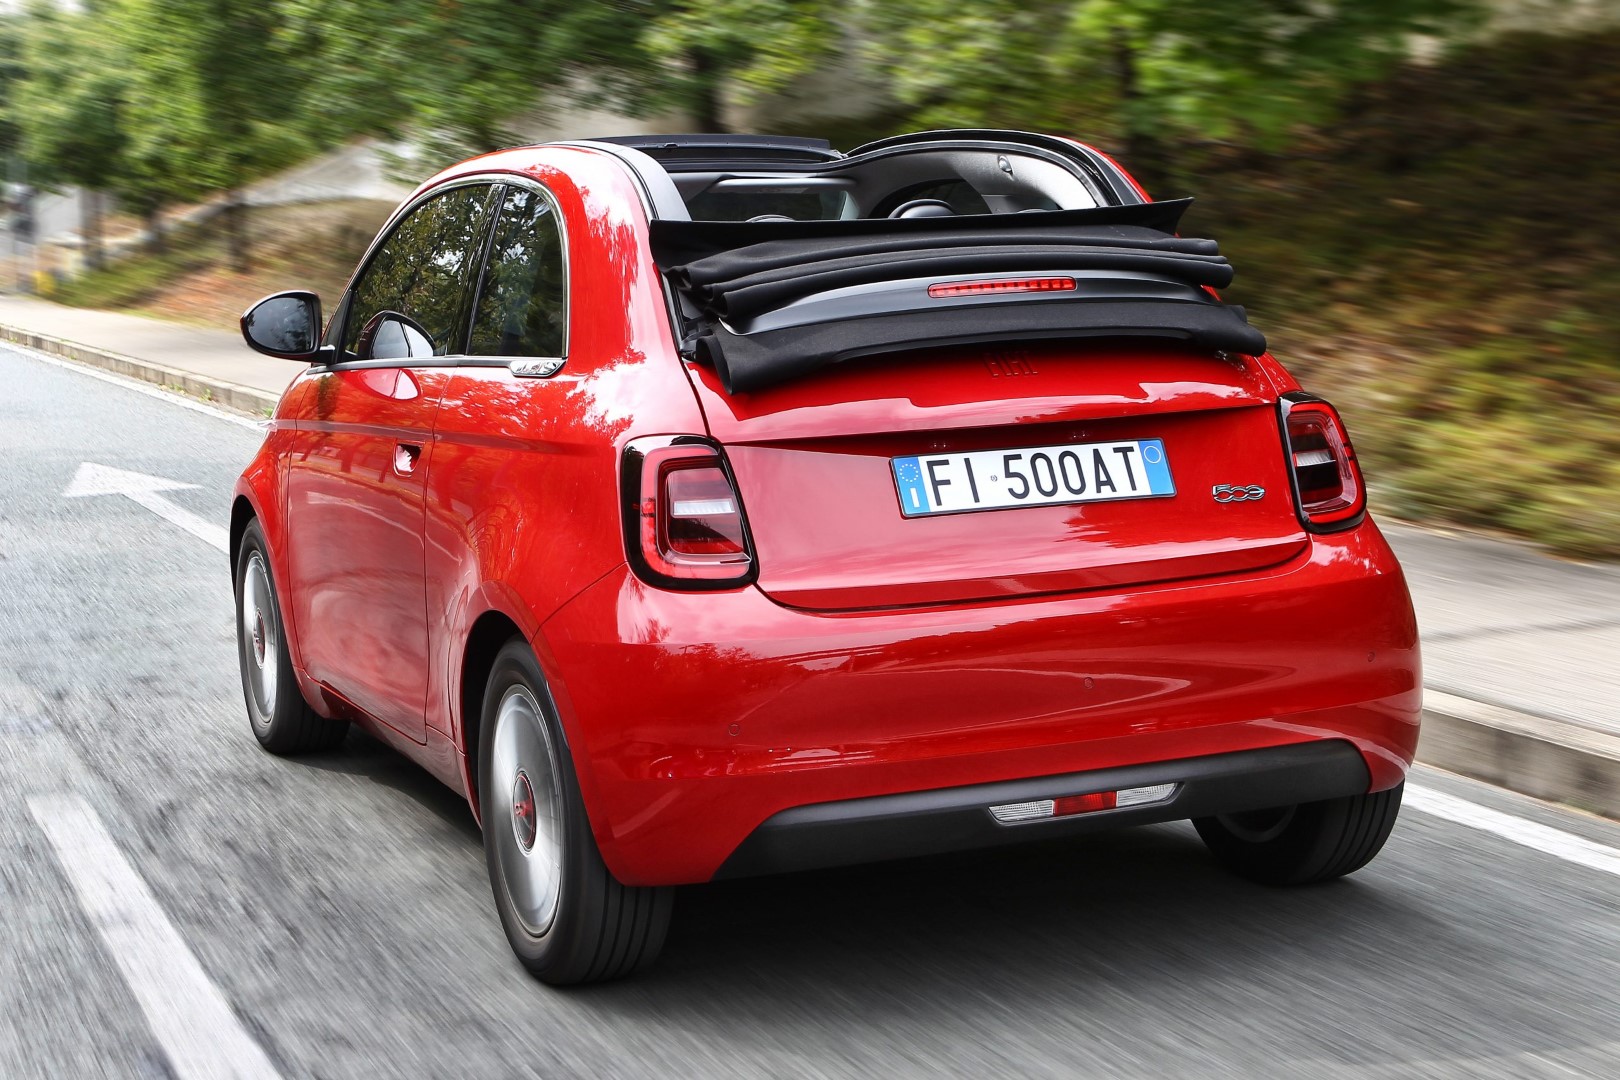 Fiat 500 (RED) cabrio